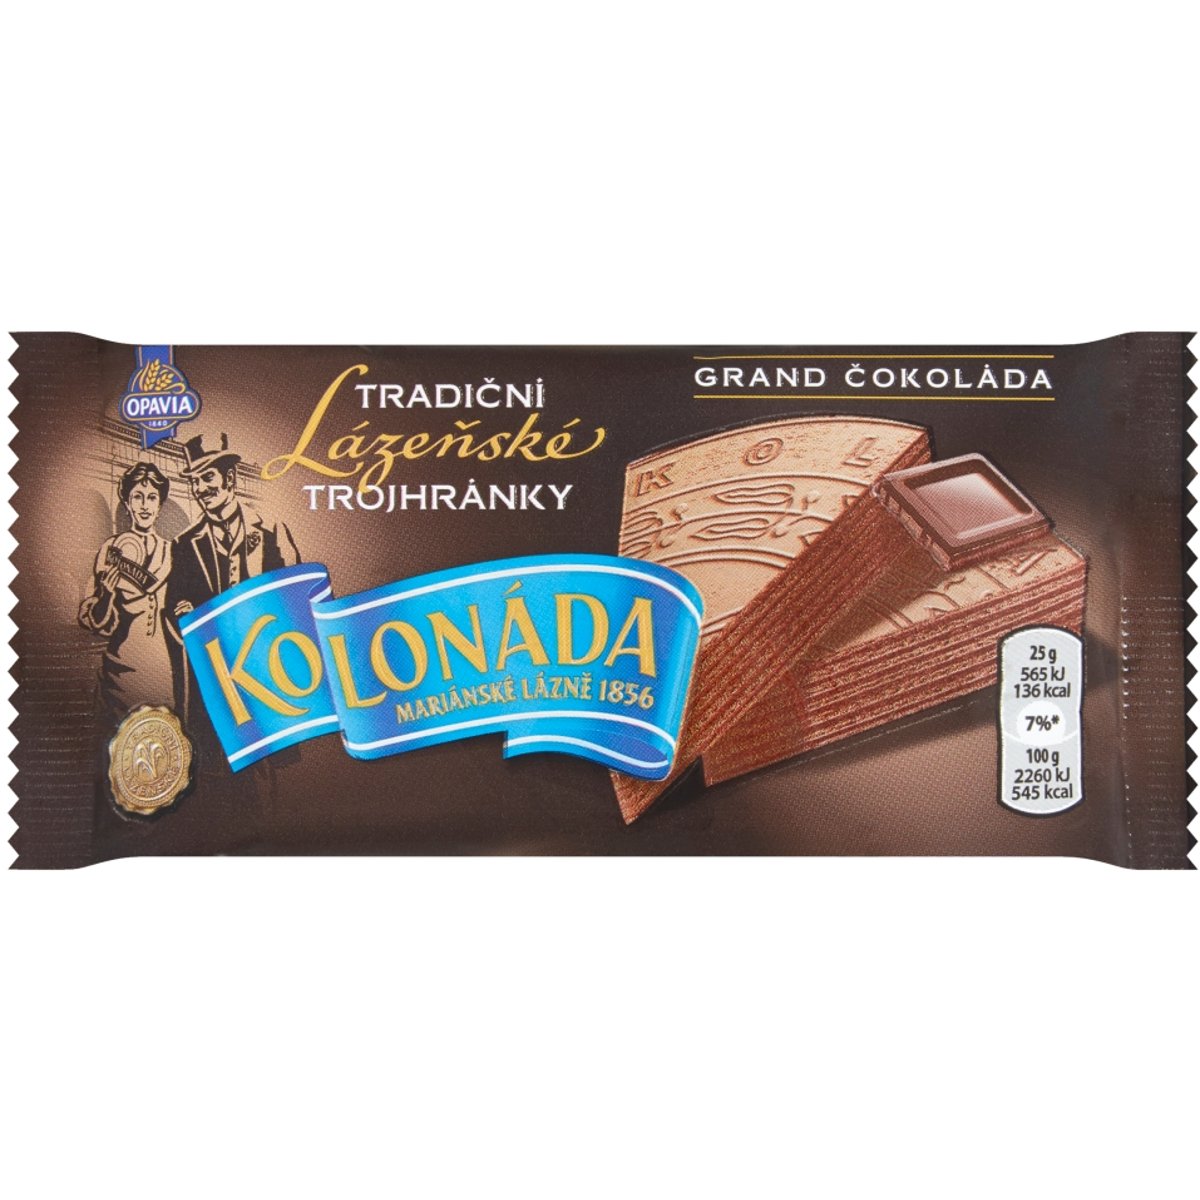 Opavia Kolonáda Trojhránky lázeňské oplatky Grand čokoláda